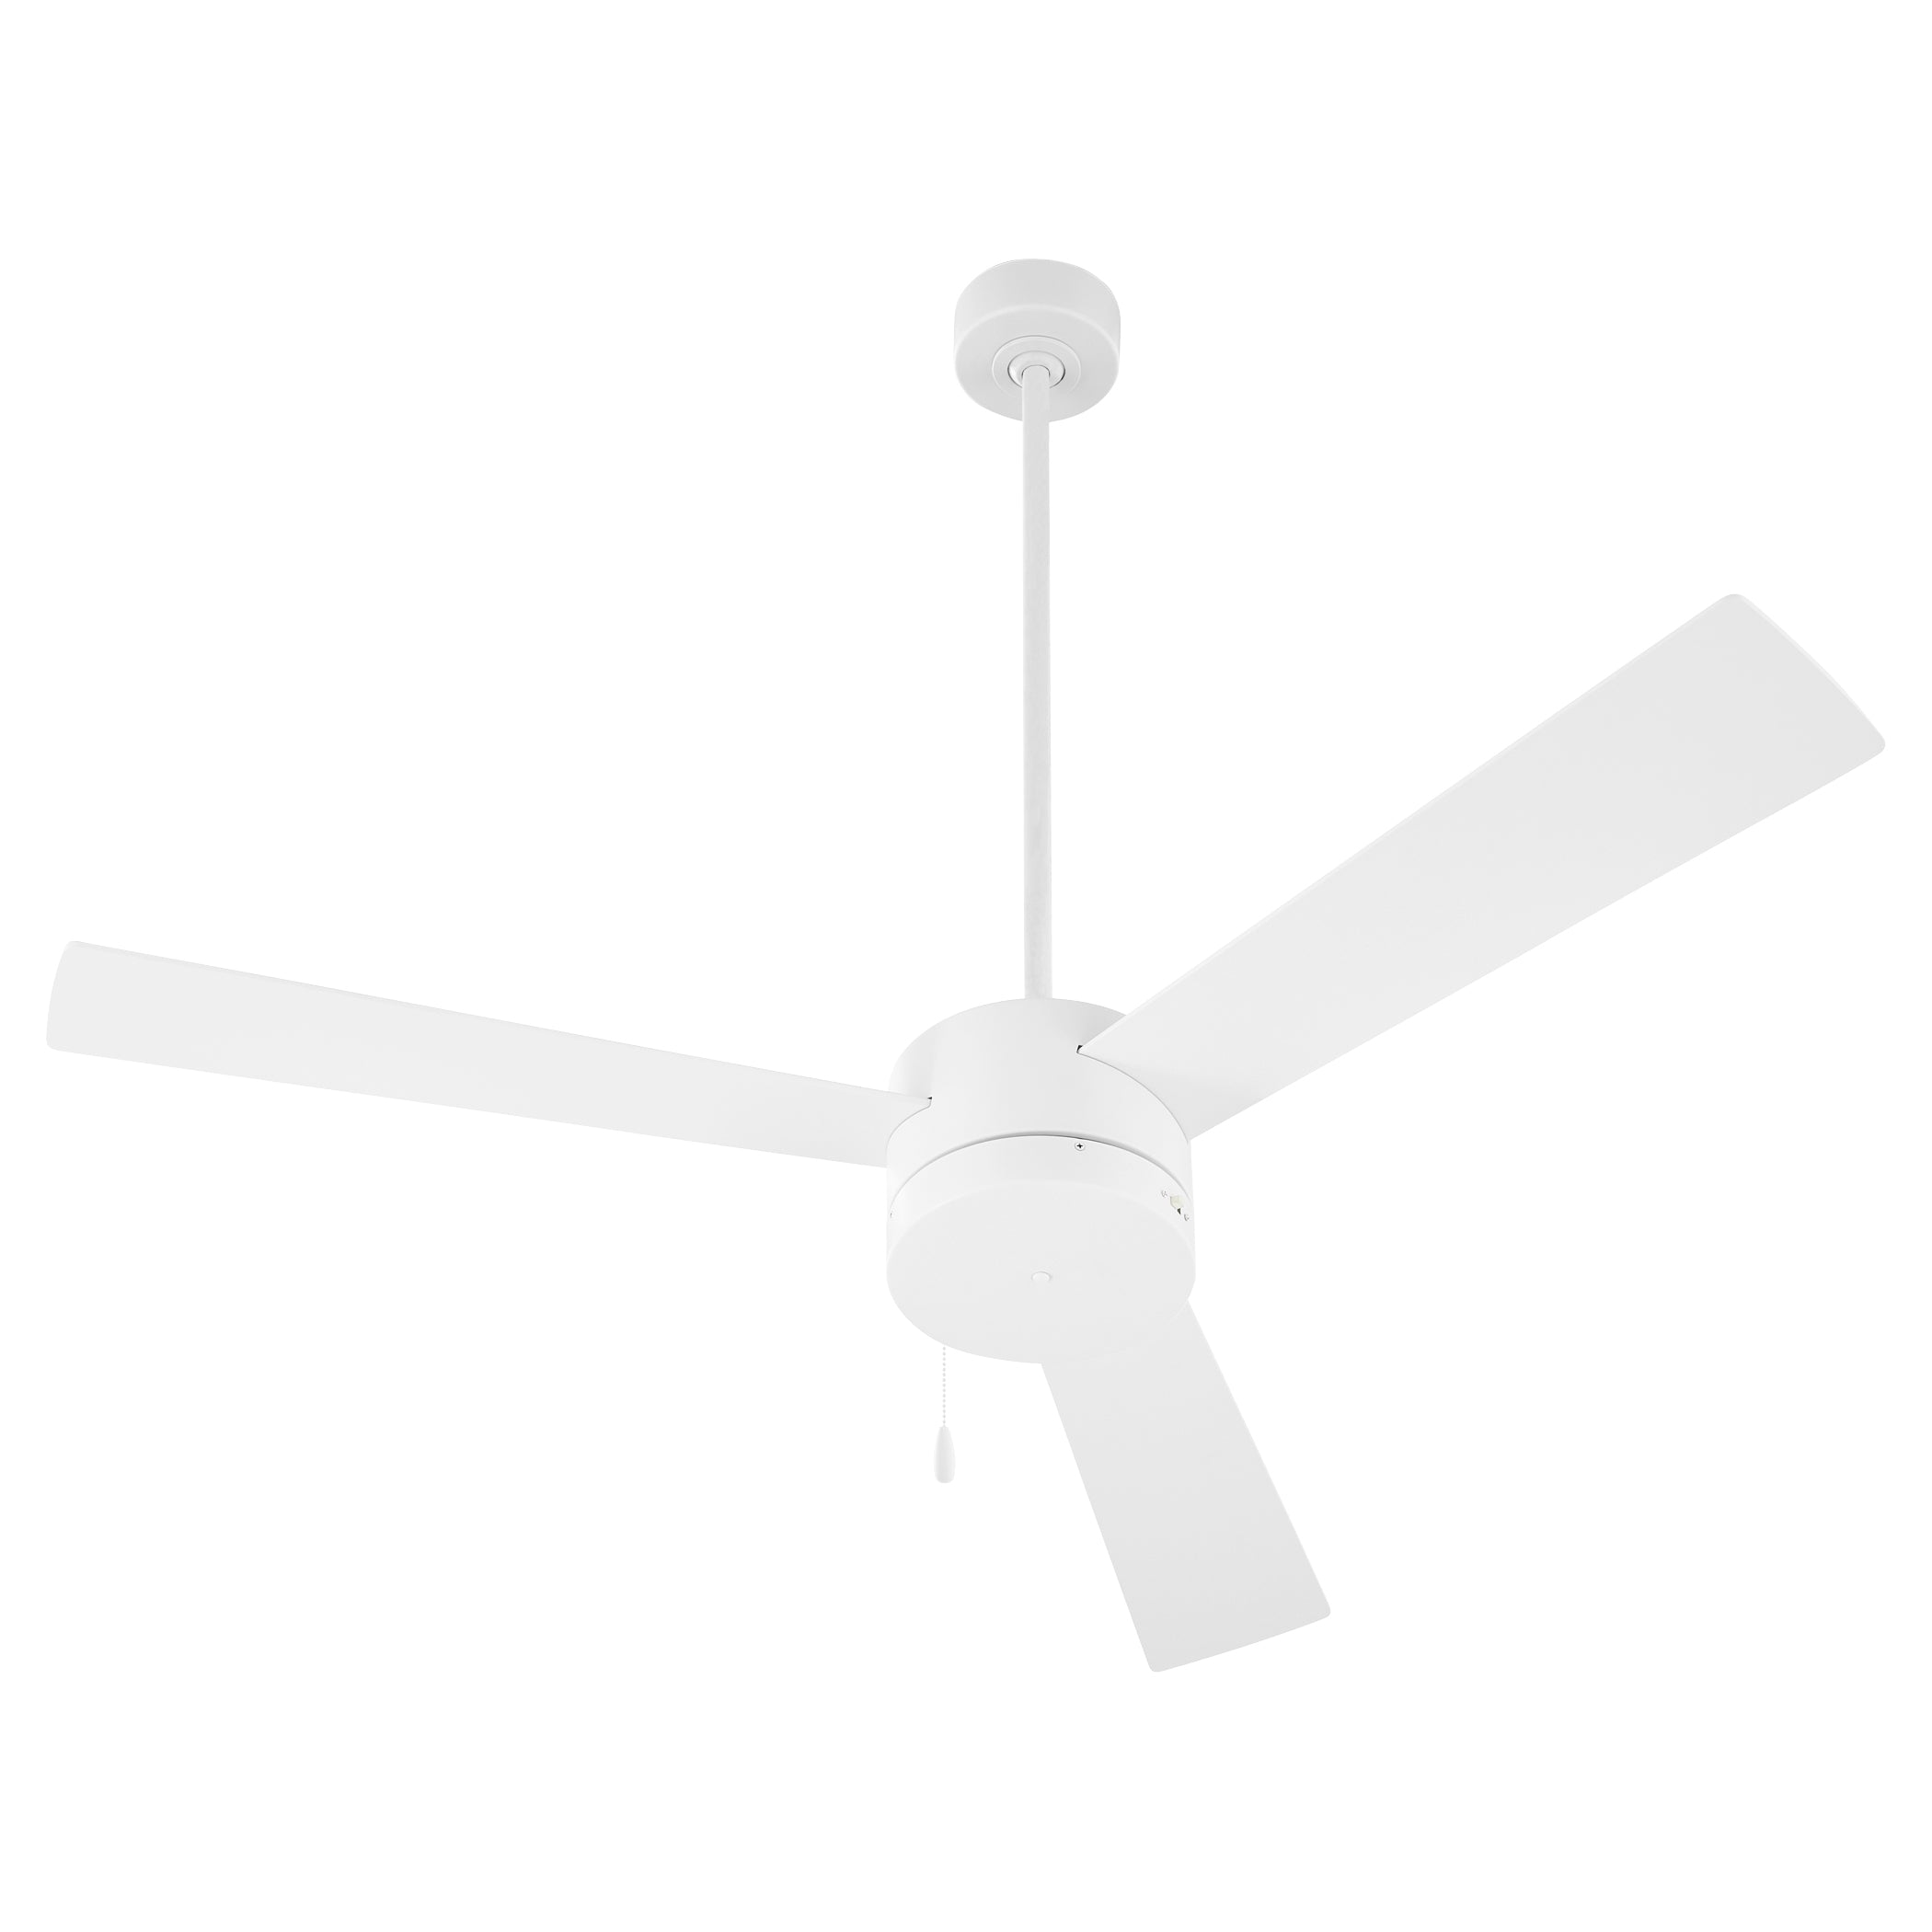 Oxygen Allegro 3-119-6 Ceiling Fan - White